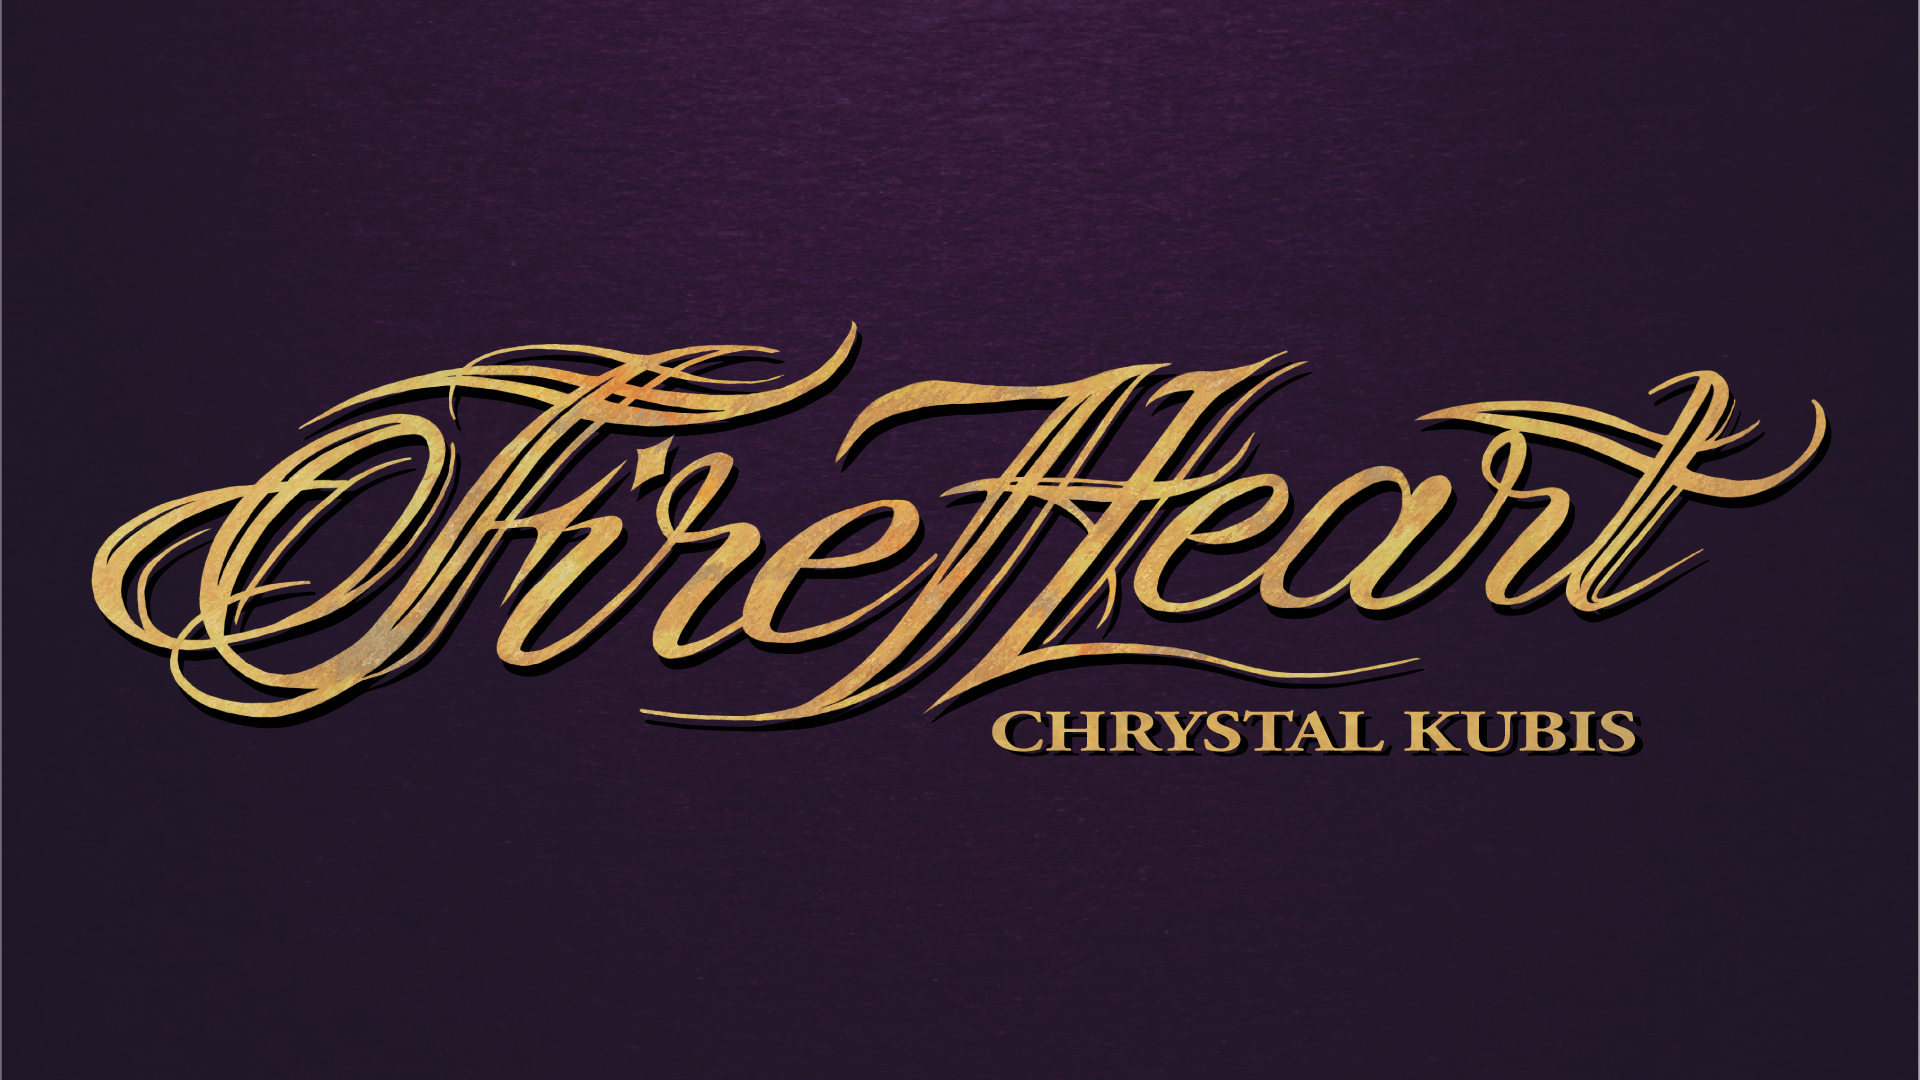 Fire Heart Chrystal Kubis